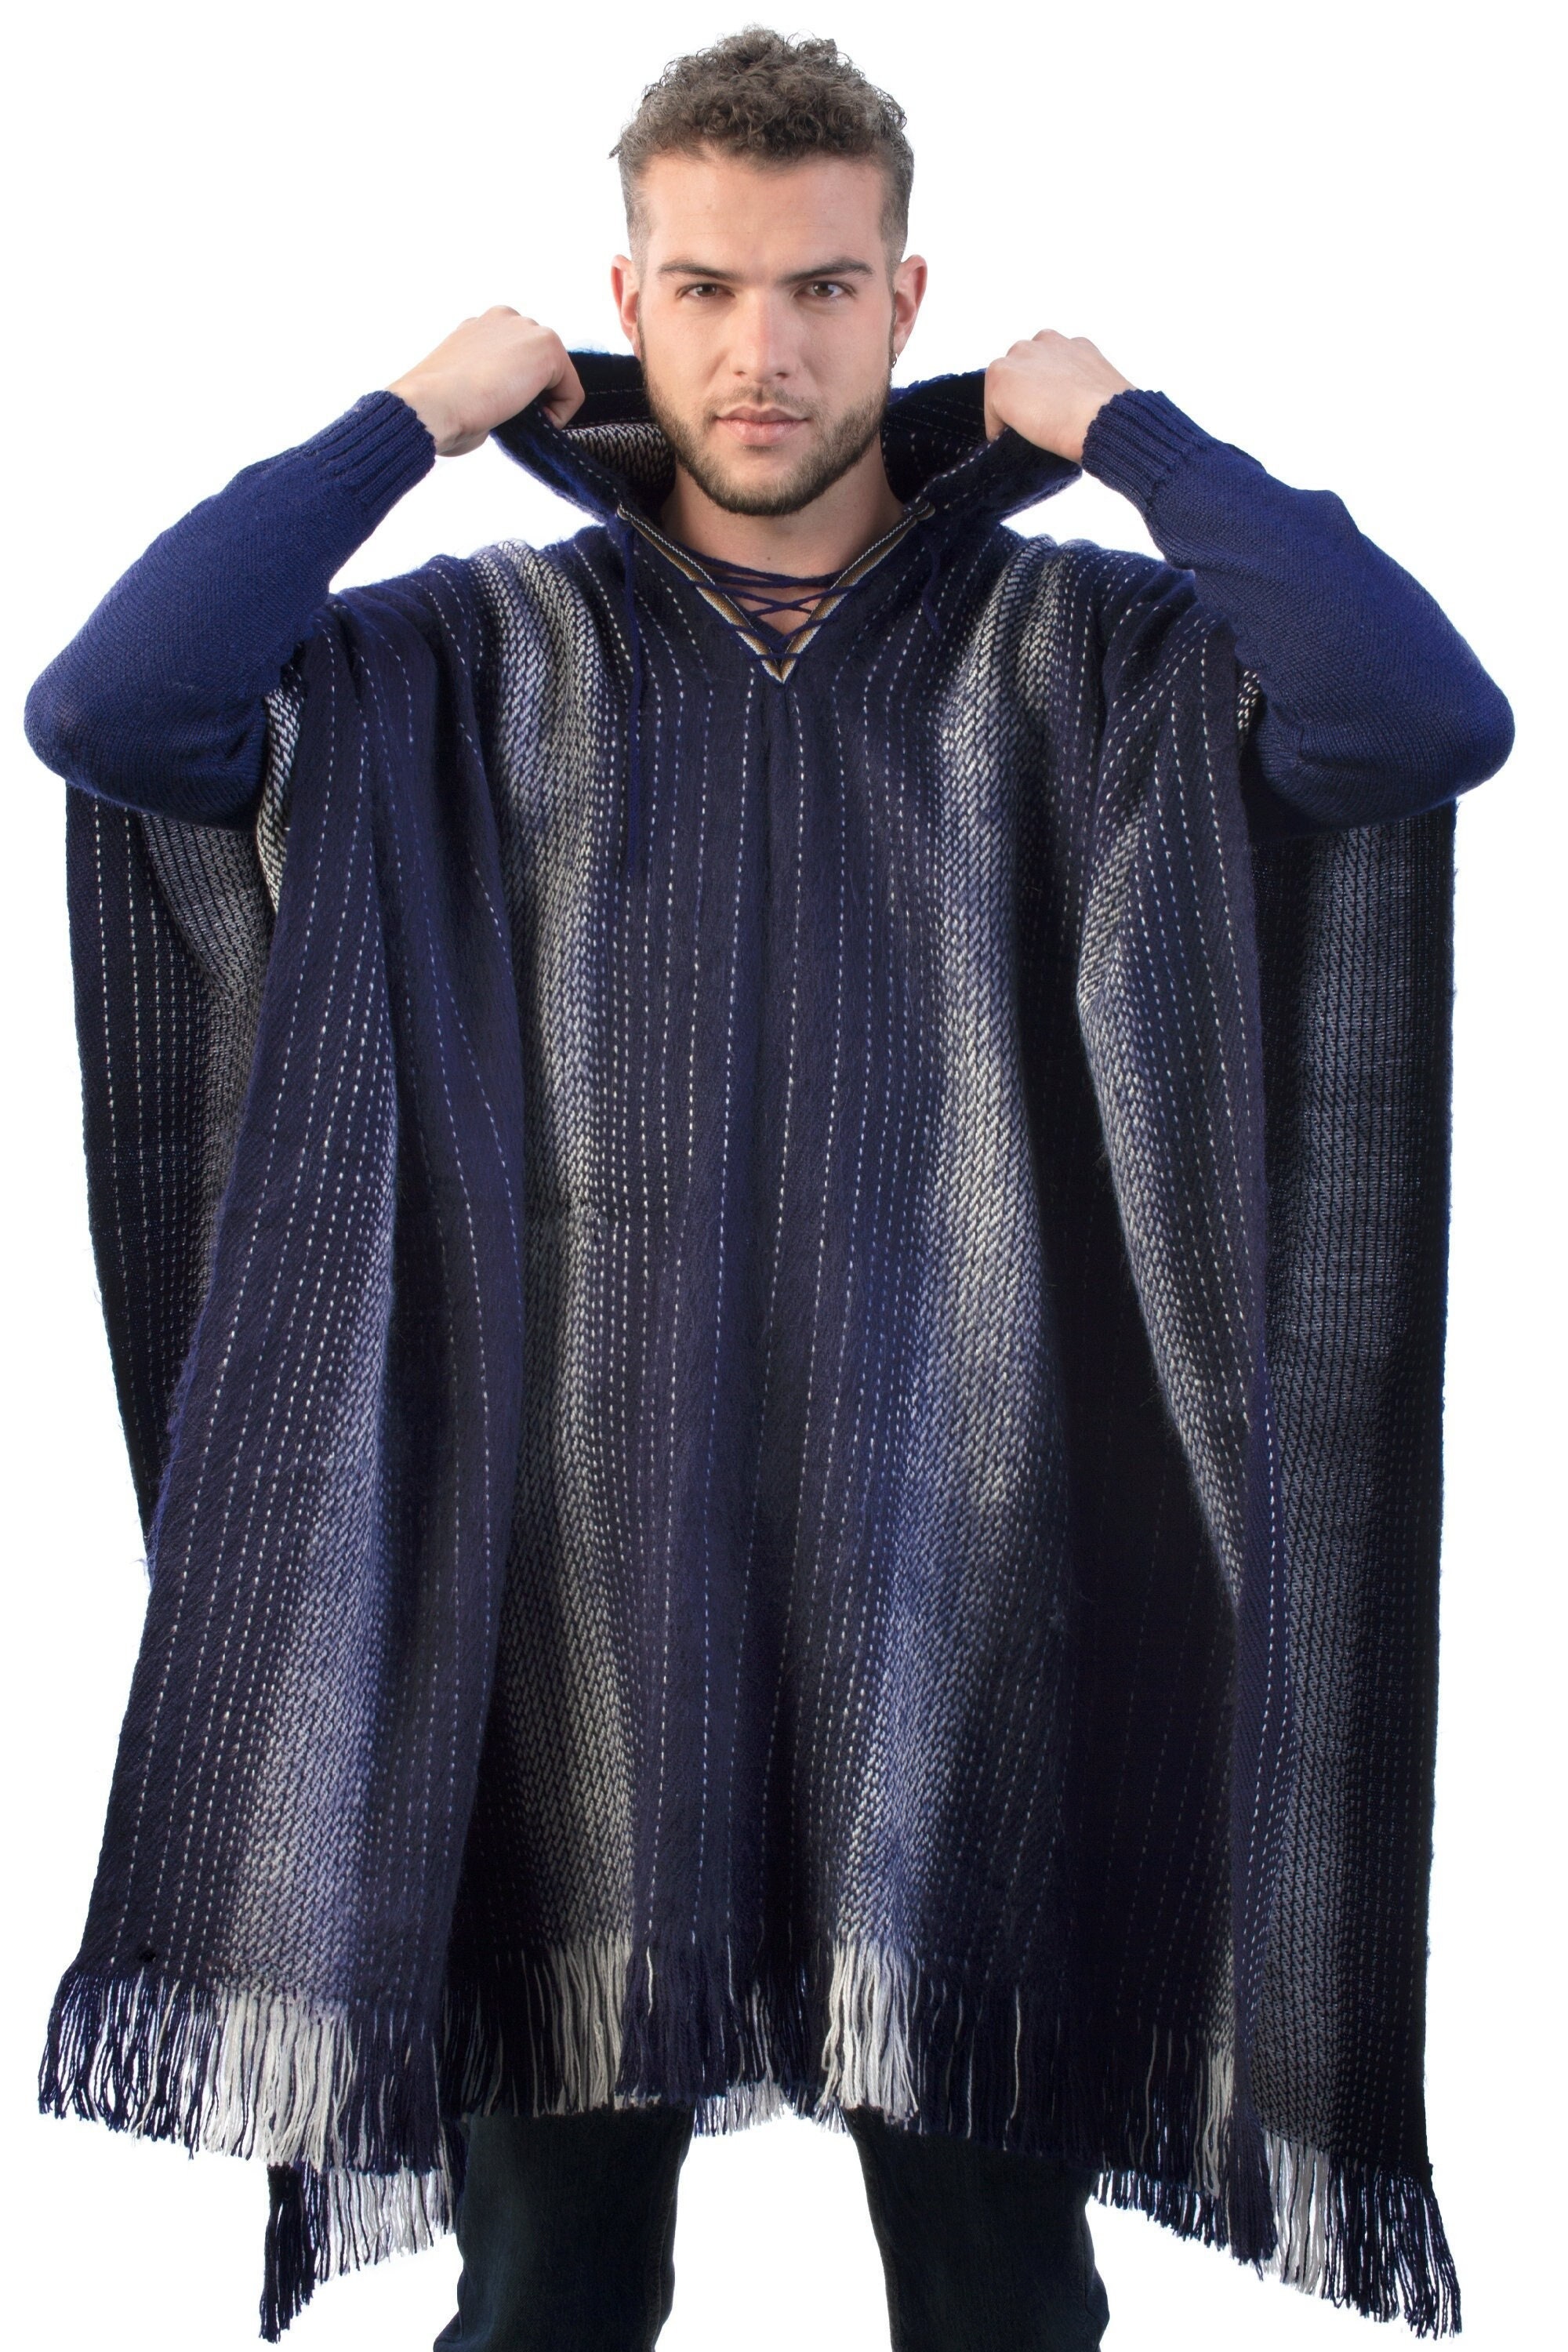 Hooded Poncho for Men Cloak Cape Knit in Alpaca Wool - Etsy